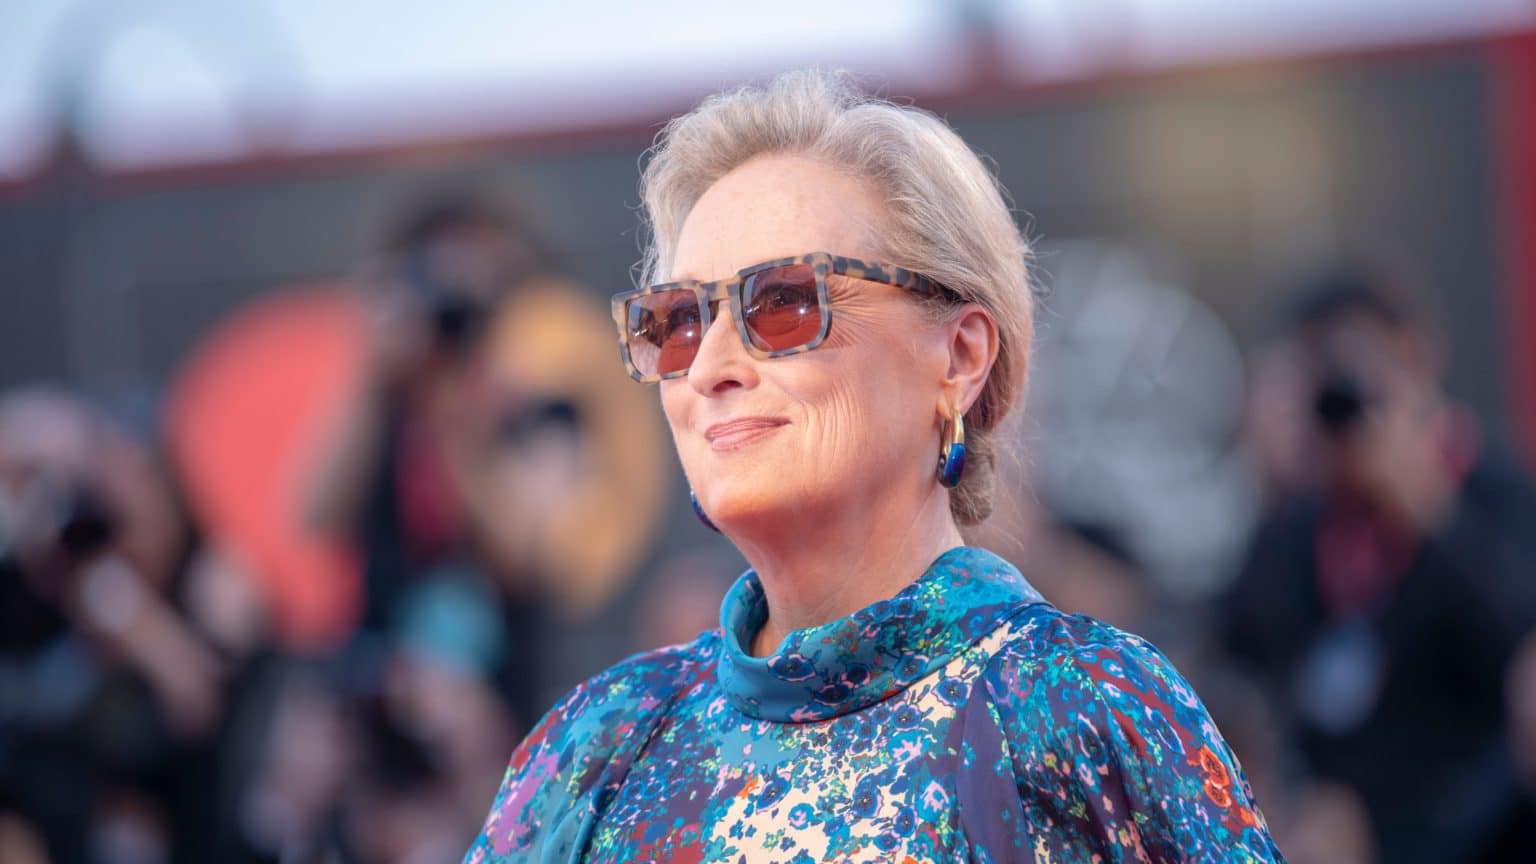 Otkrivena tajna poznatih zvijezda: Meryl Streep i Don Gummer razdvojeni već 6 godina